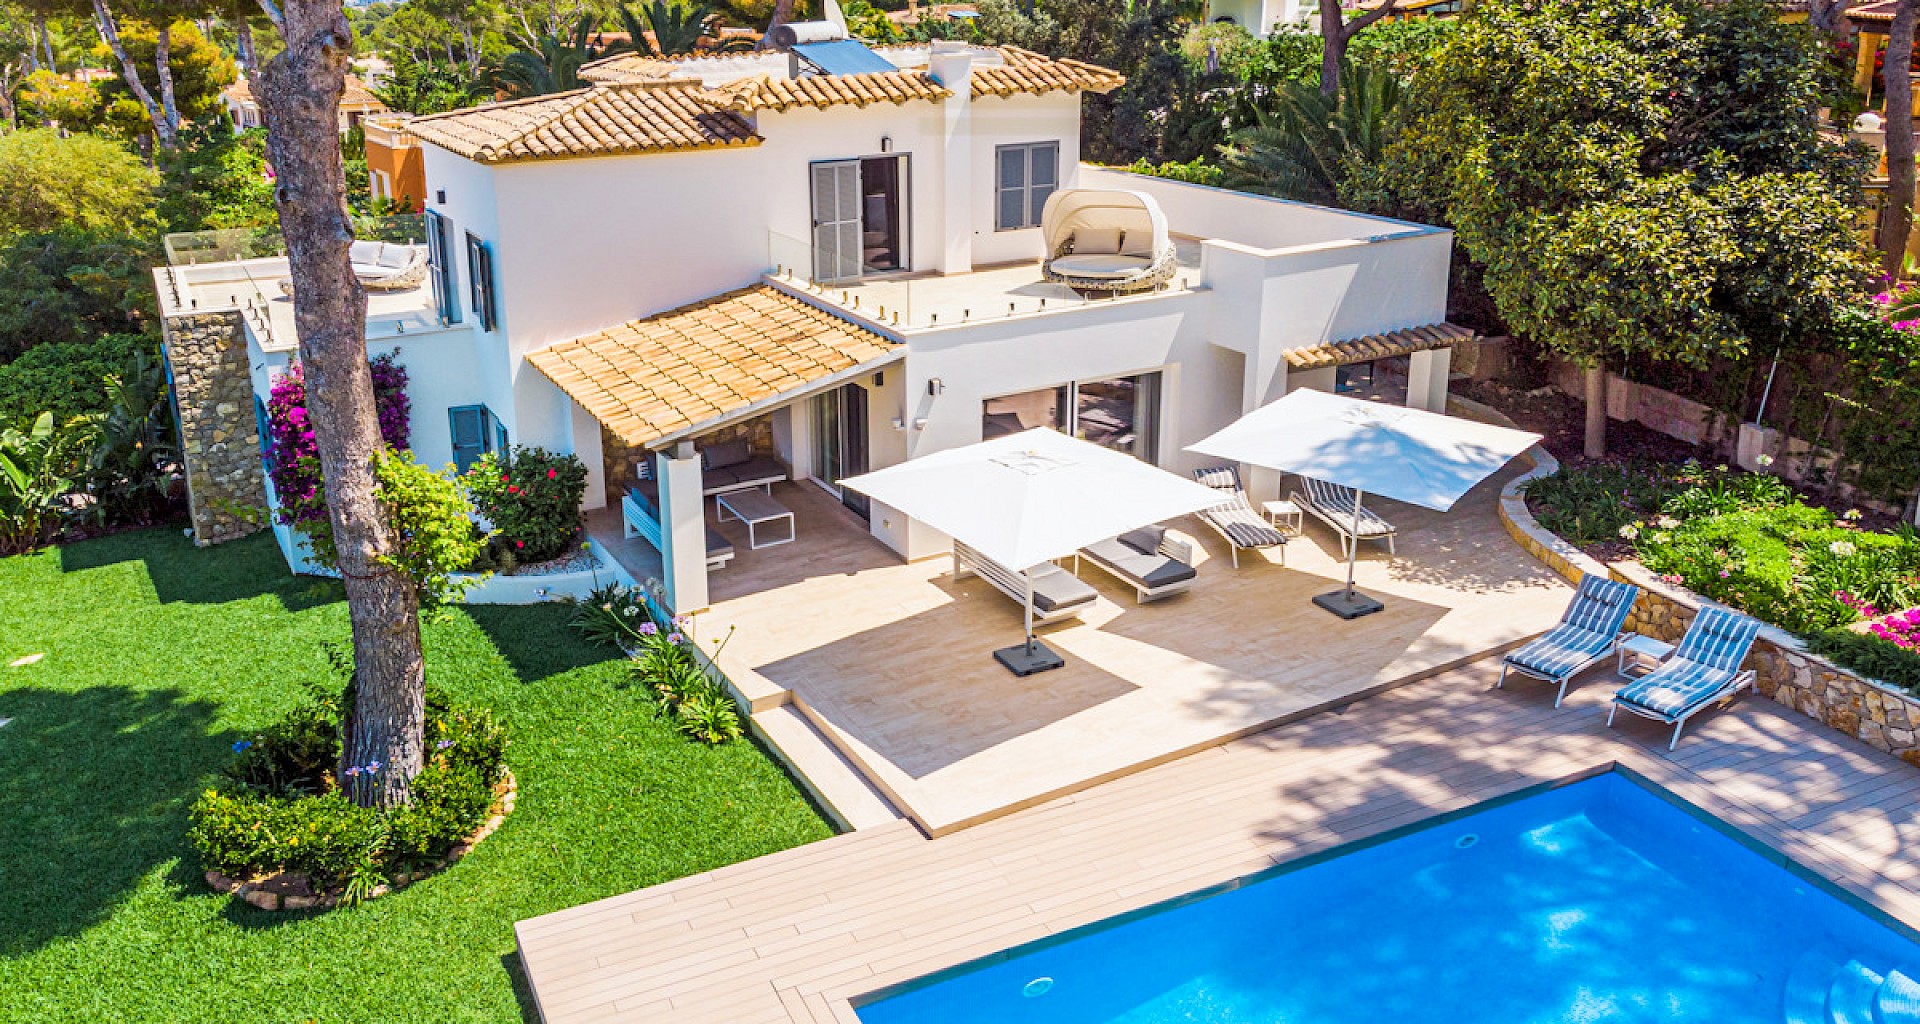 KROHN & LUEDEMANN Luxury family villa in Santa Ponsa with pool and garden Villa in Santa Ponsa mit Pool und Garten 01